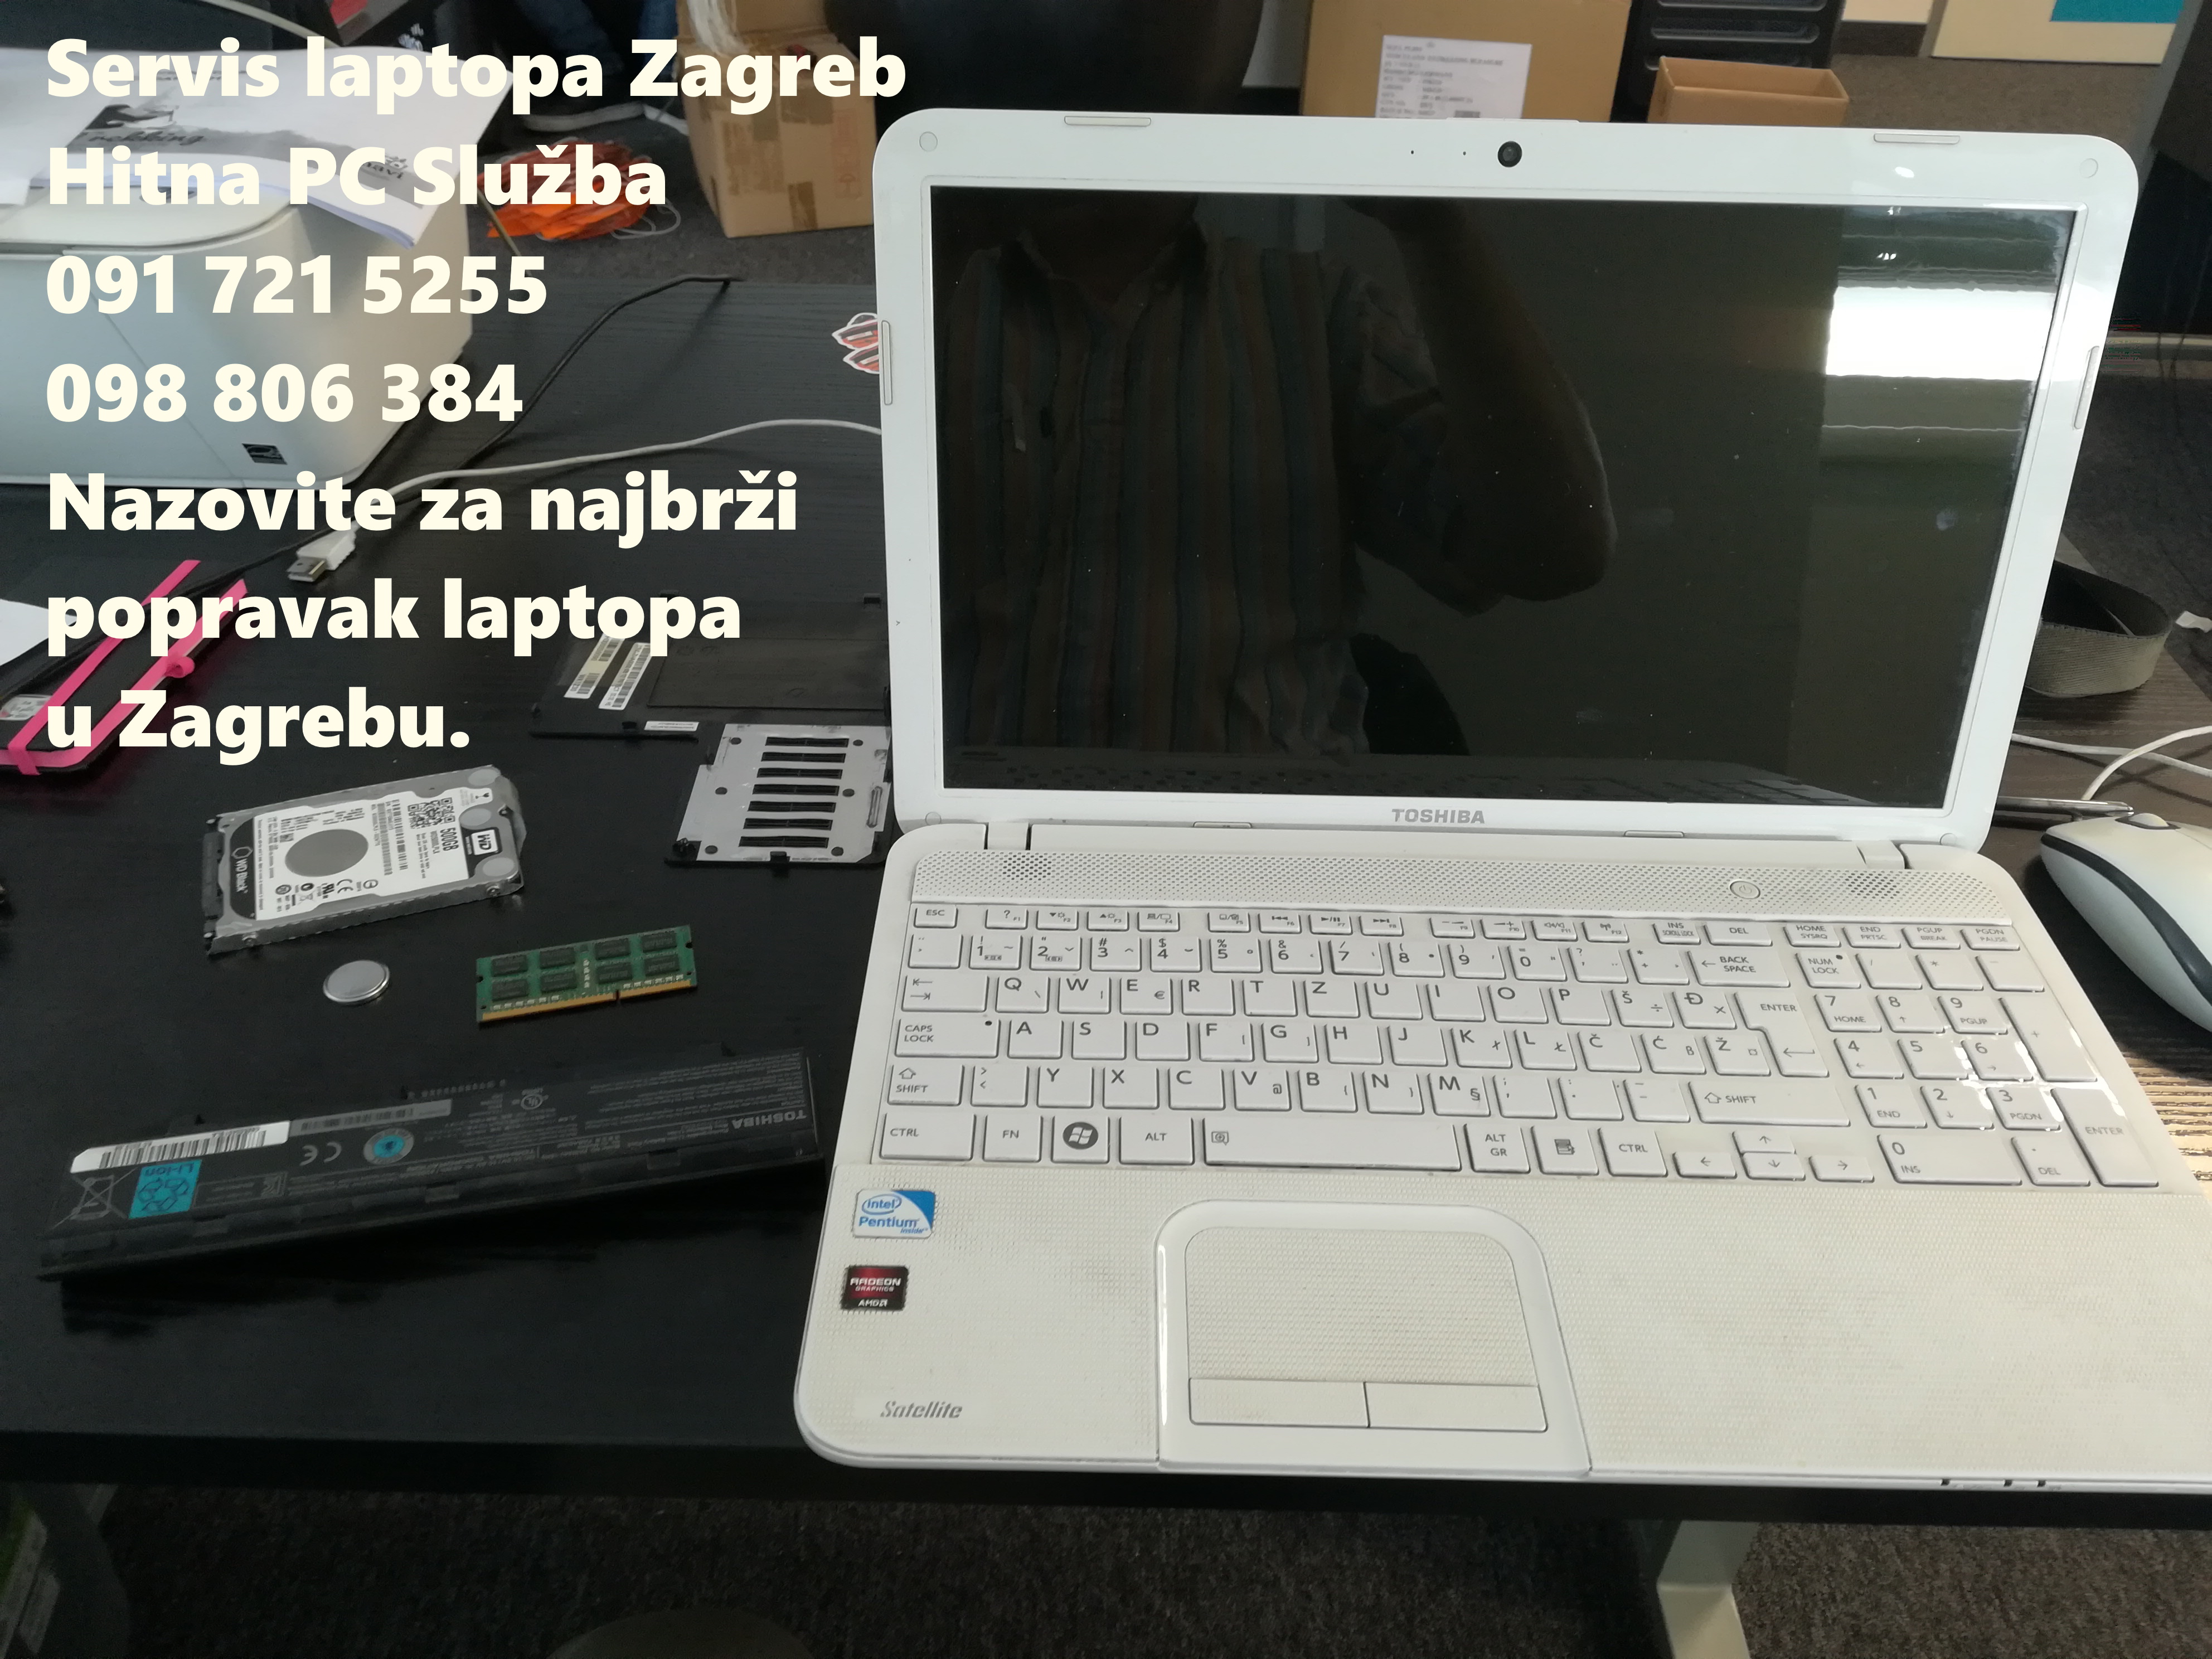 pc doctor servis laptopa Zagreb